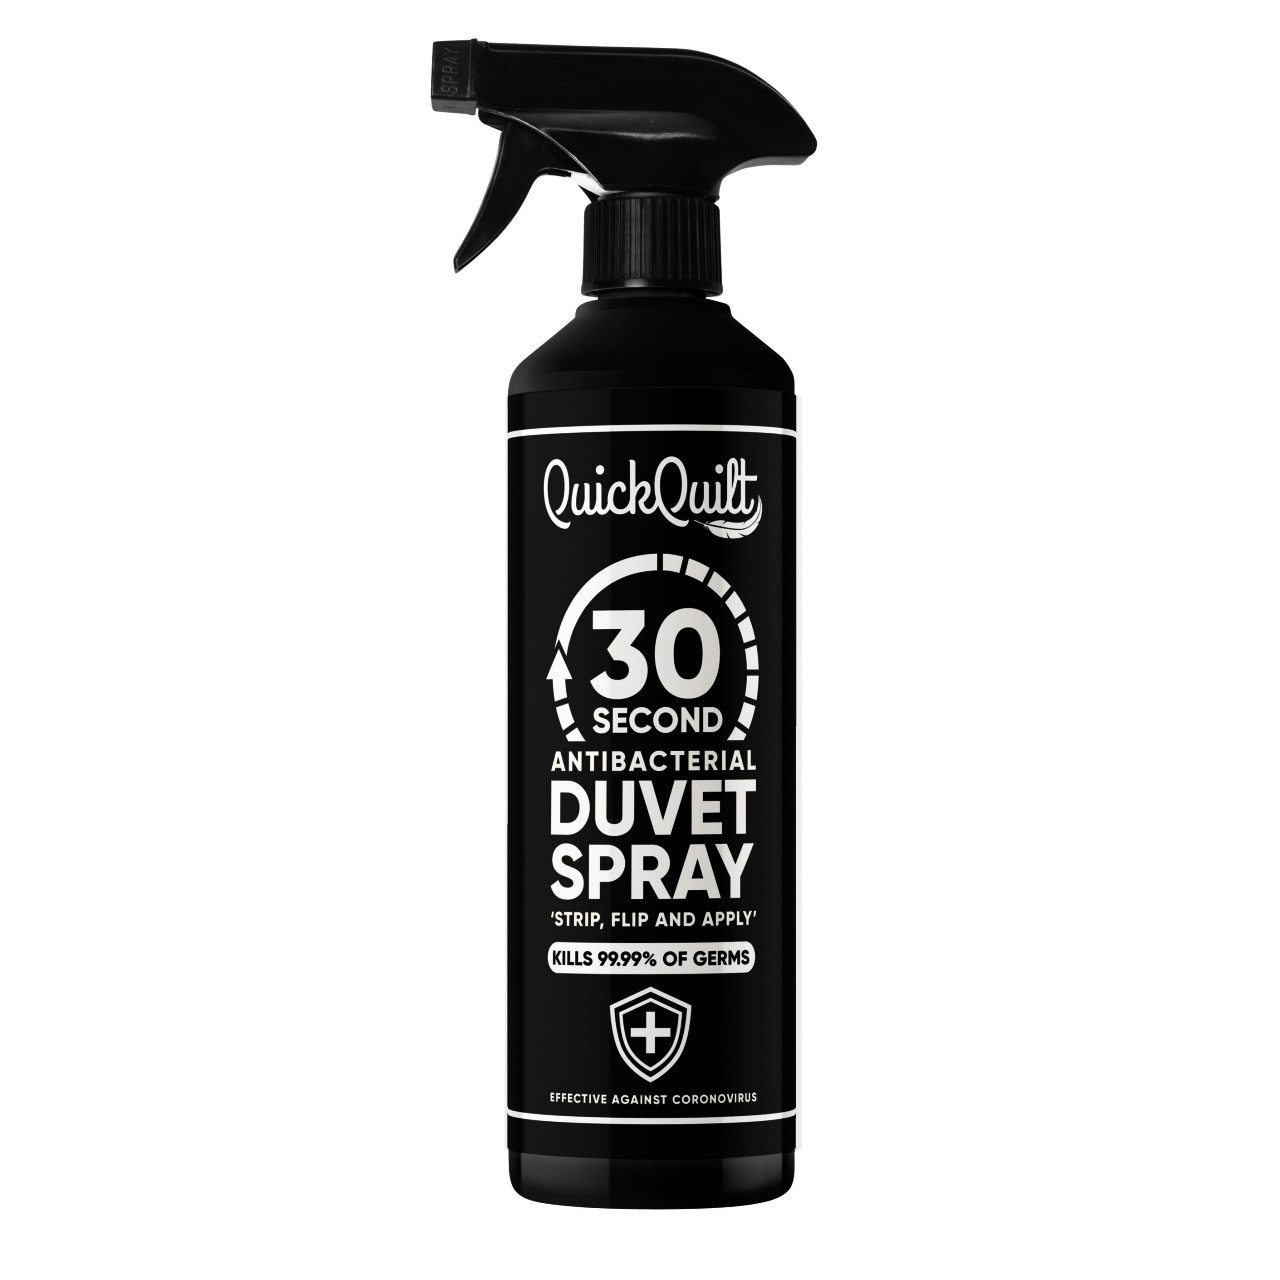 QuickQuilt Duvet Sprays - Pack of 2